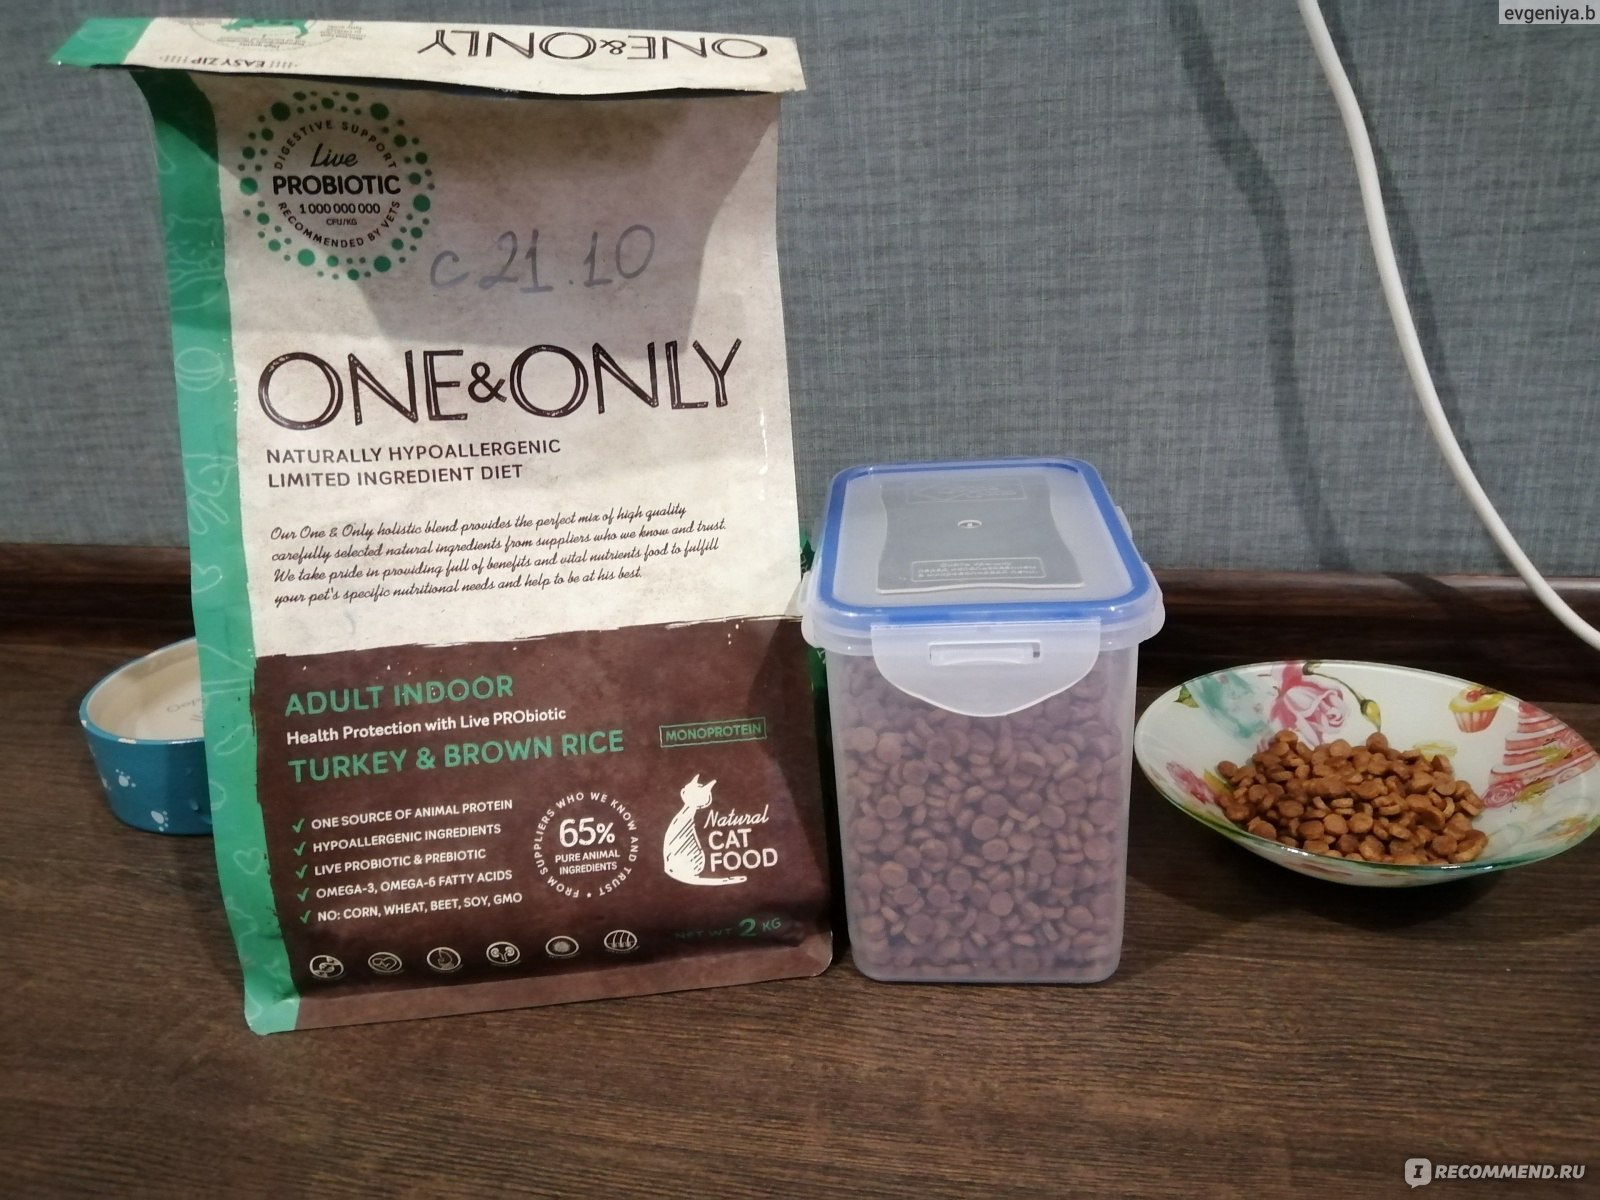 One&only (ван энд онли): обзор корма для кошек, состав, отзывы